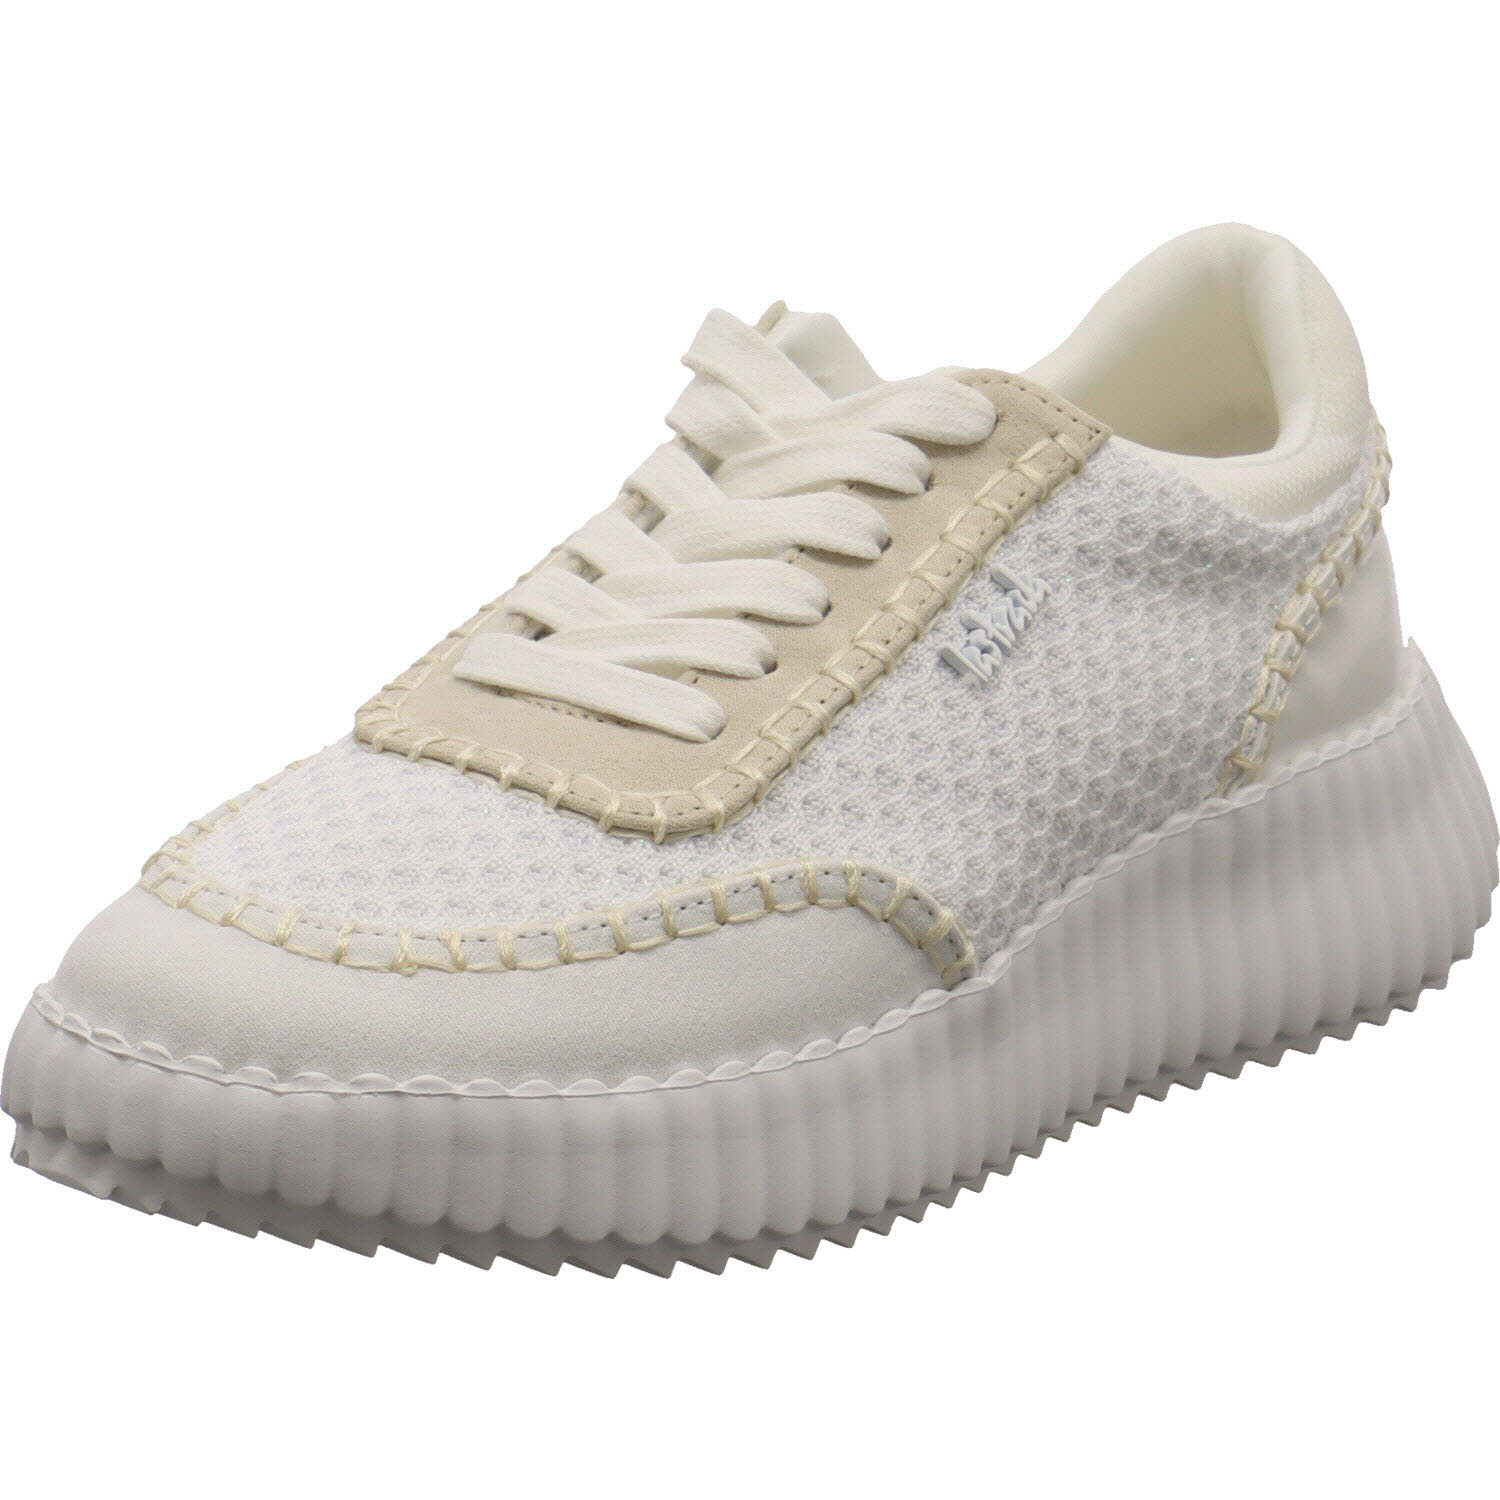 Damen Sneaker low von La Strada auch in Weiß erhältlich